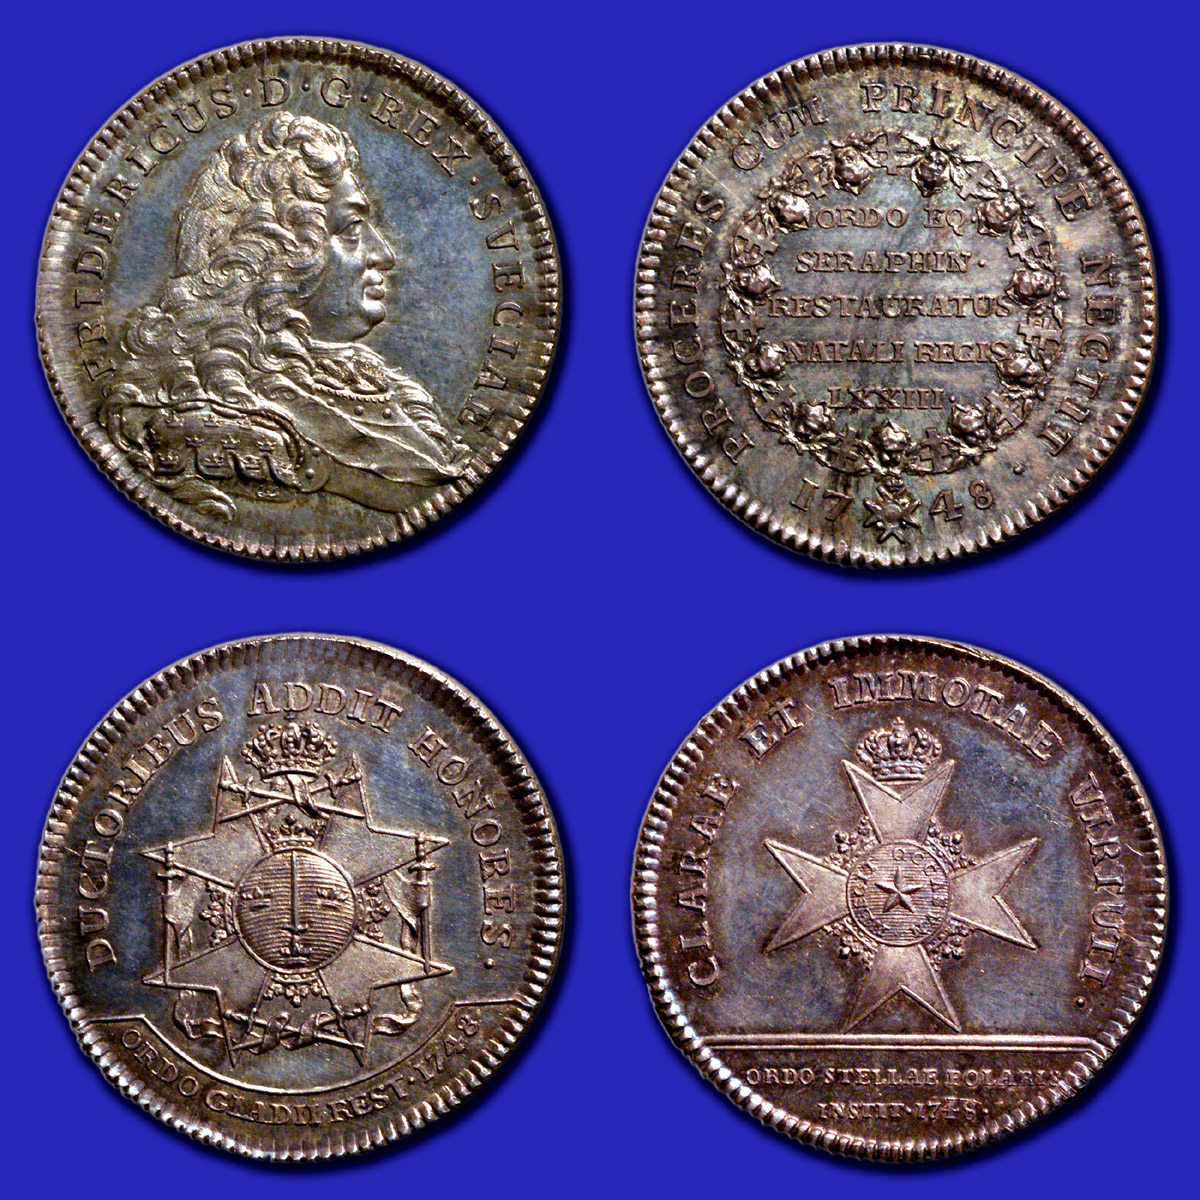 1748_ordensrmedaljer2_1200